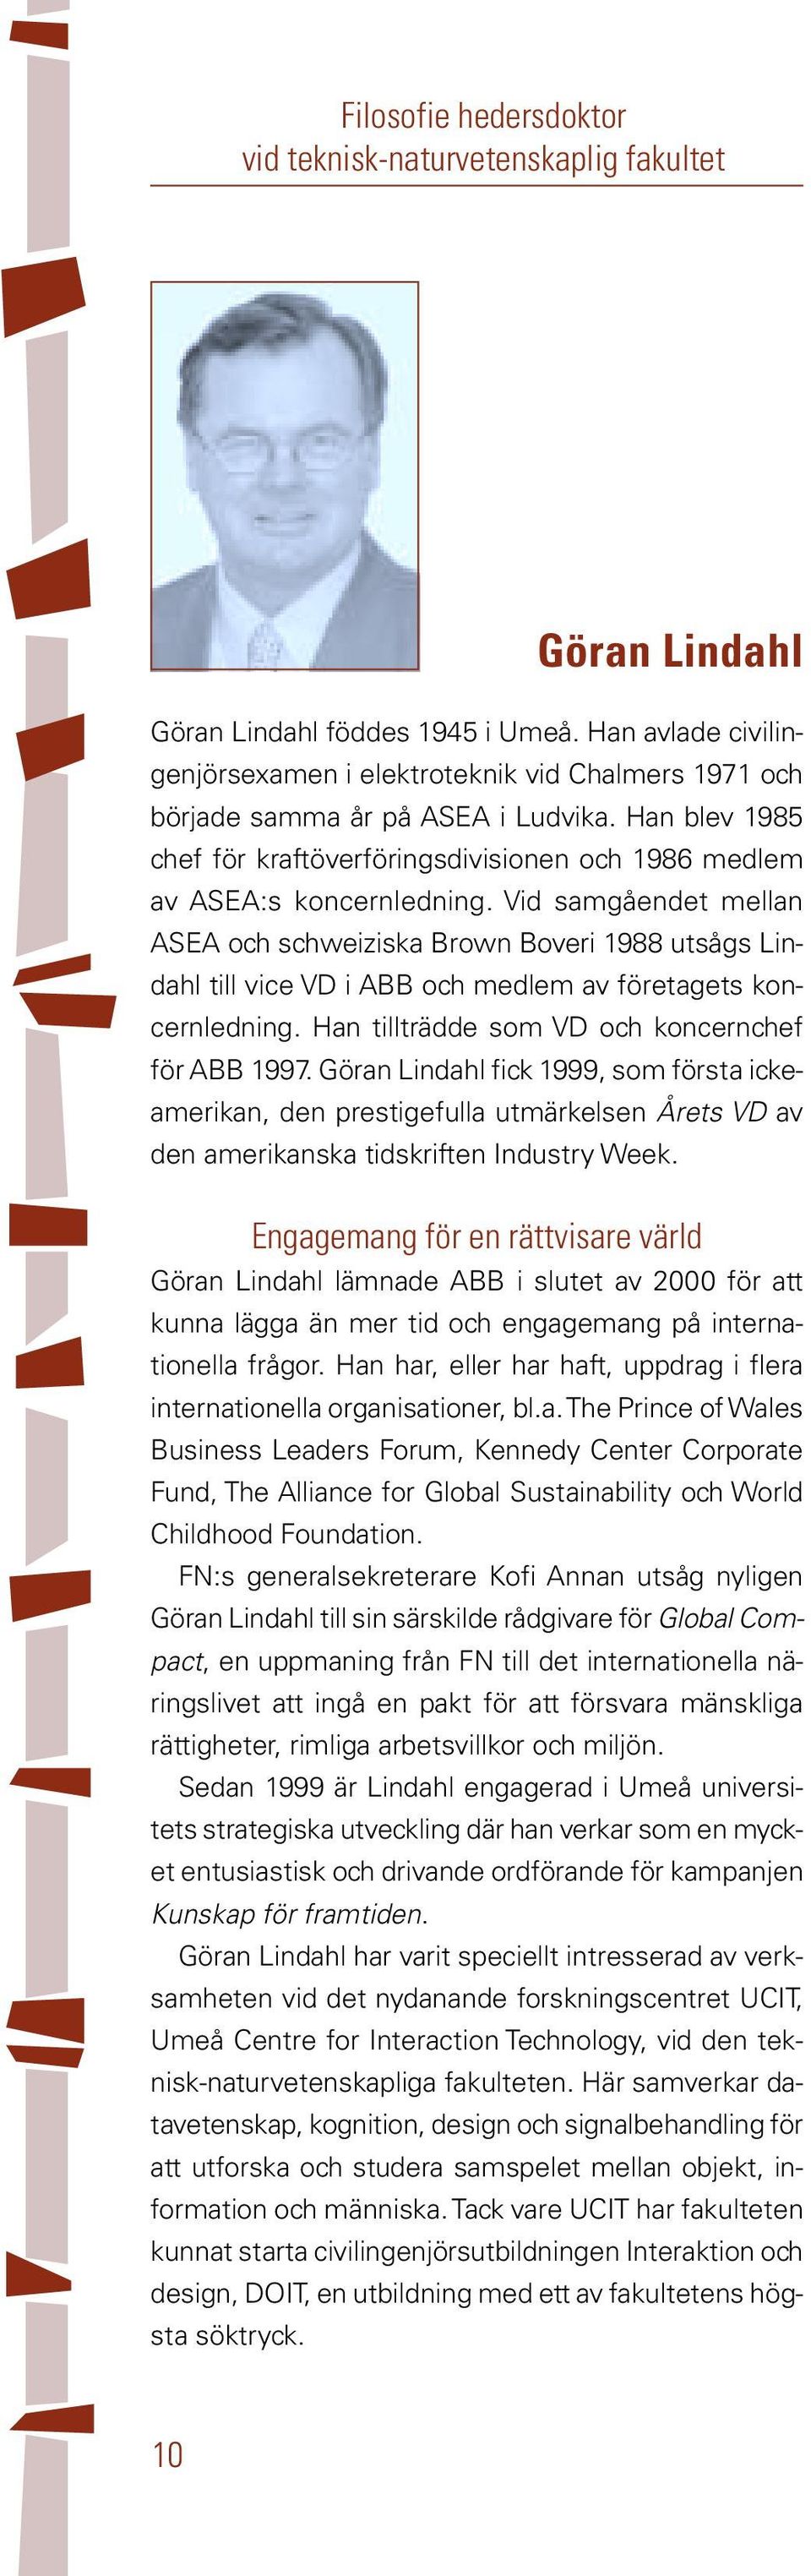 Vid samgåendet mellan ASEA och schweiziska Brown Boveri 1988 utsågs Lindahl till vice VD i ABB och medlem av företagets koncernledning. Han tillträdde som VD och koncernchef för ABB 1997.